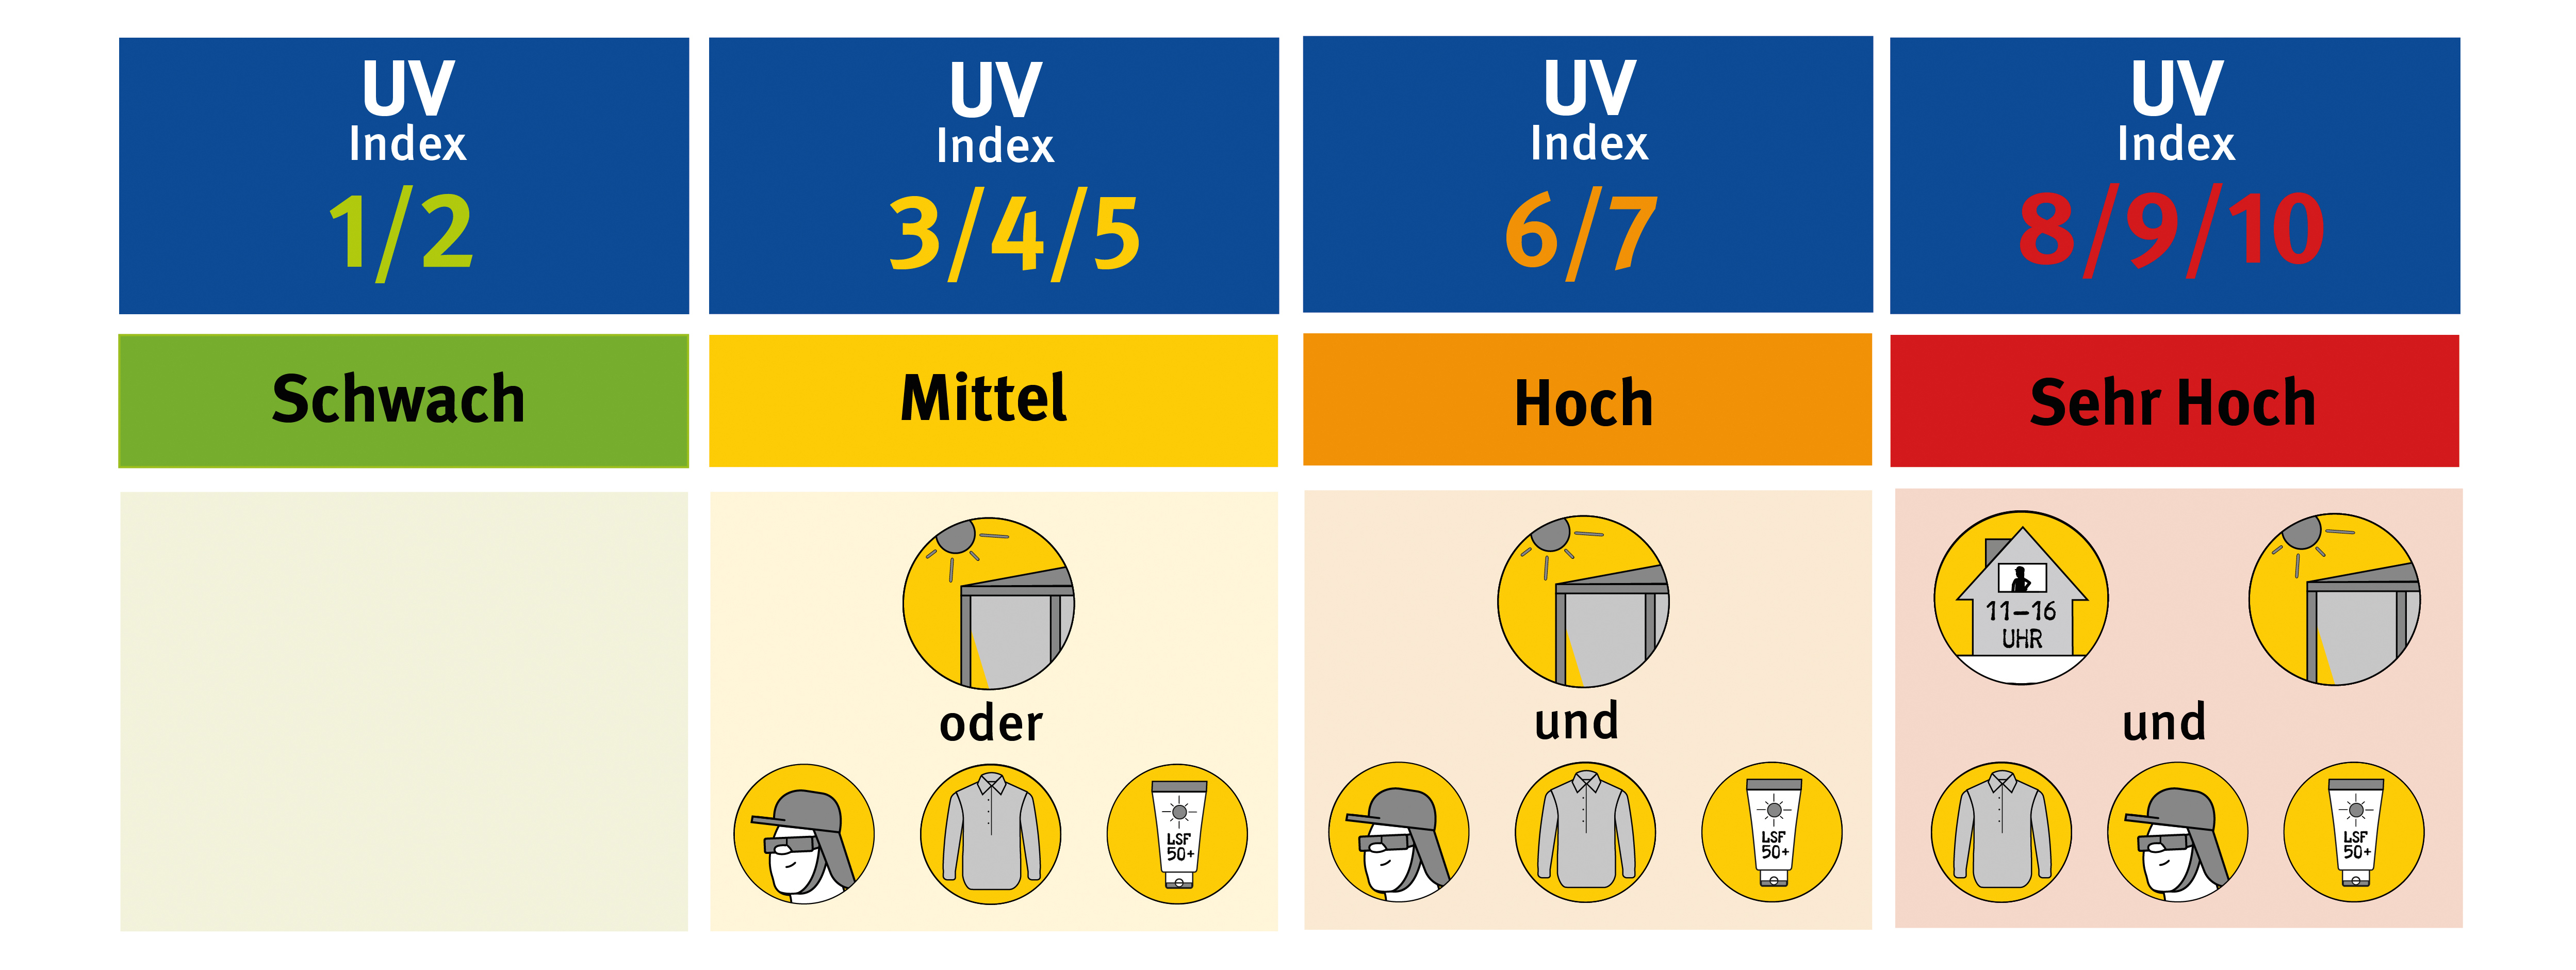 Grafik der verschiedenen UV-Indexen mit Empfehlungen zu geeigneten Schutzmaßnahmen.